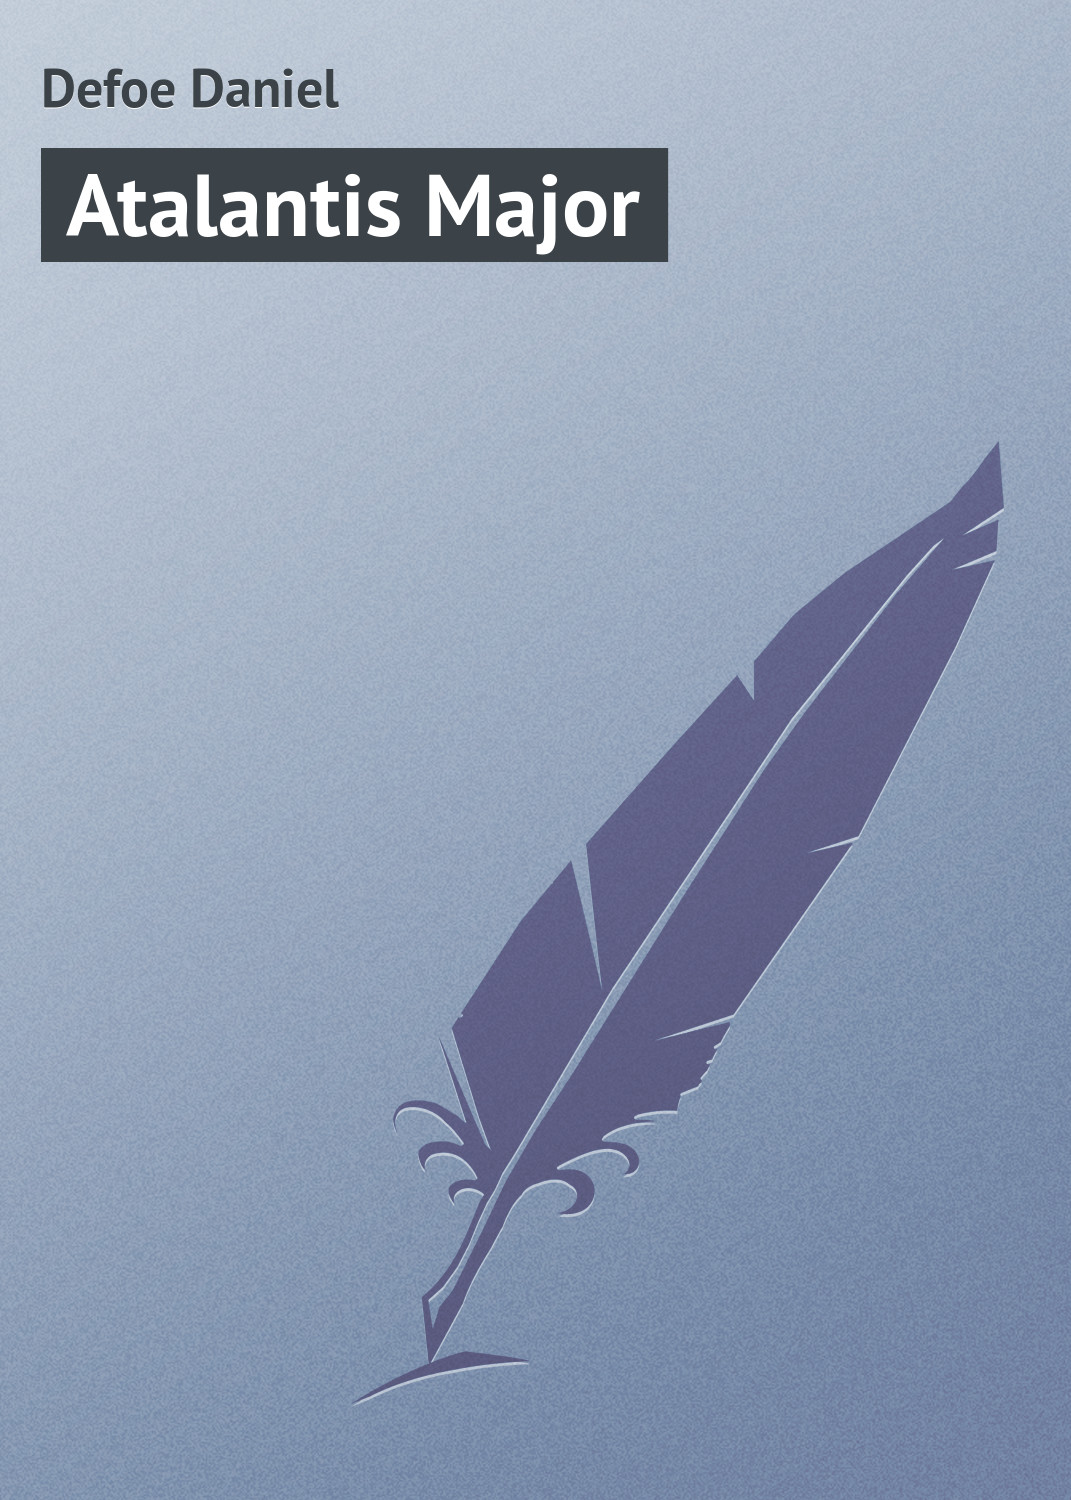 Книга Atalantis Major из серии , созданная Daniel Defoe, может относится к жанру Зарубежная классика. Стоимость электронной книги Atalantis Major с идентификатором 23159979 составляет 5.99 руб.